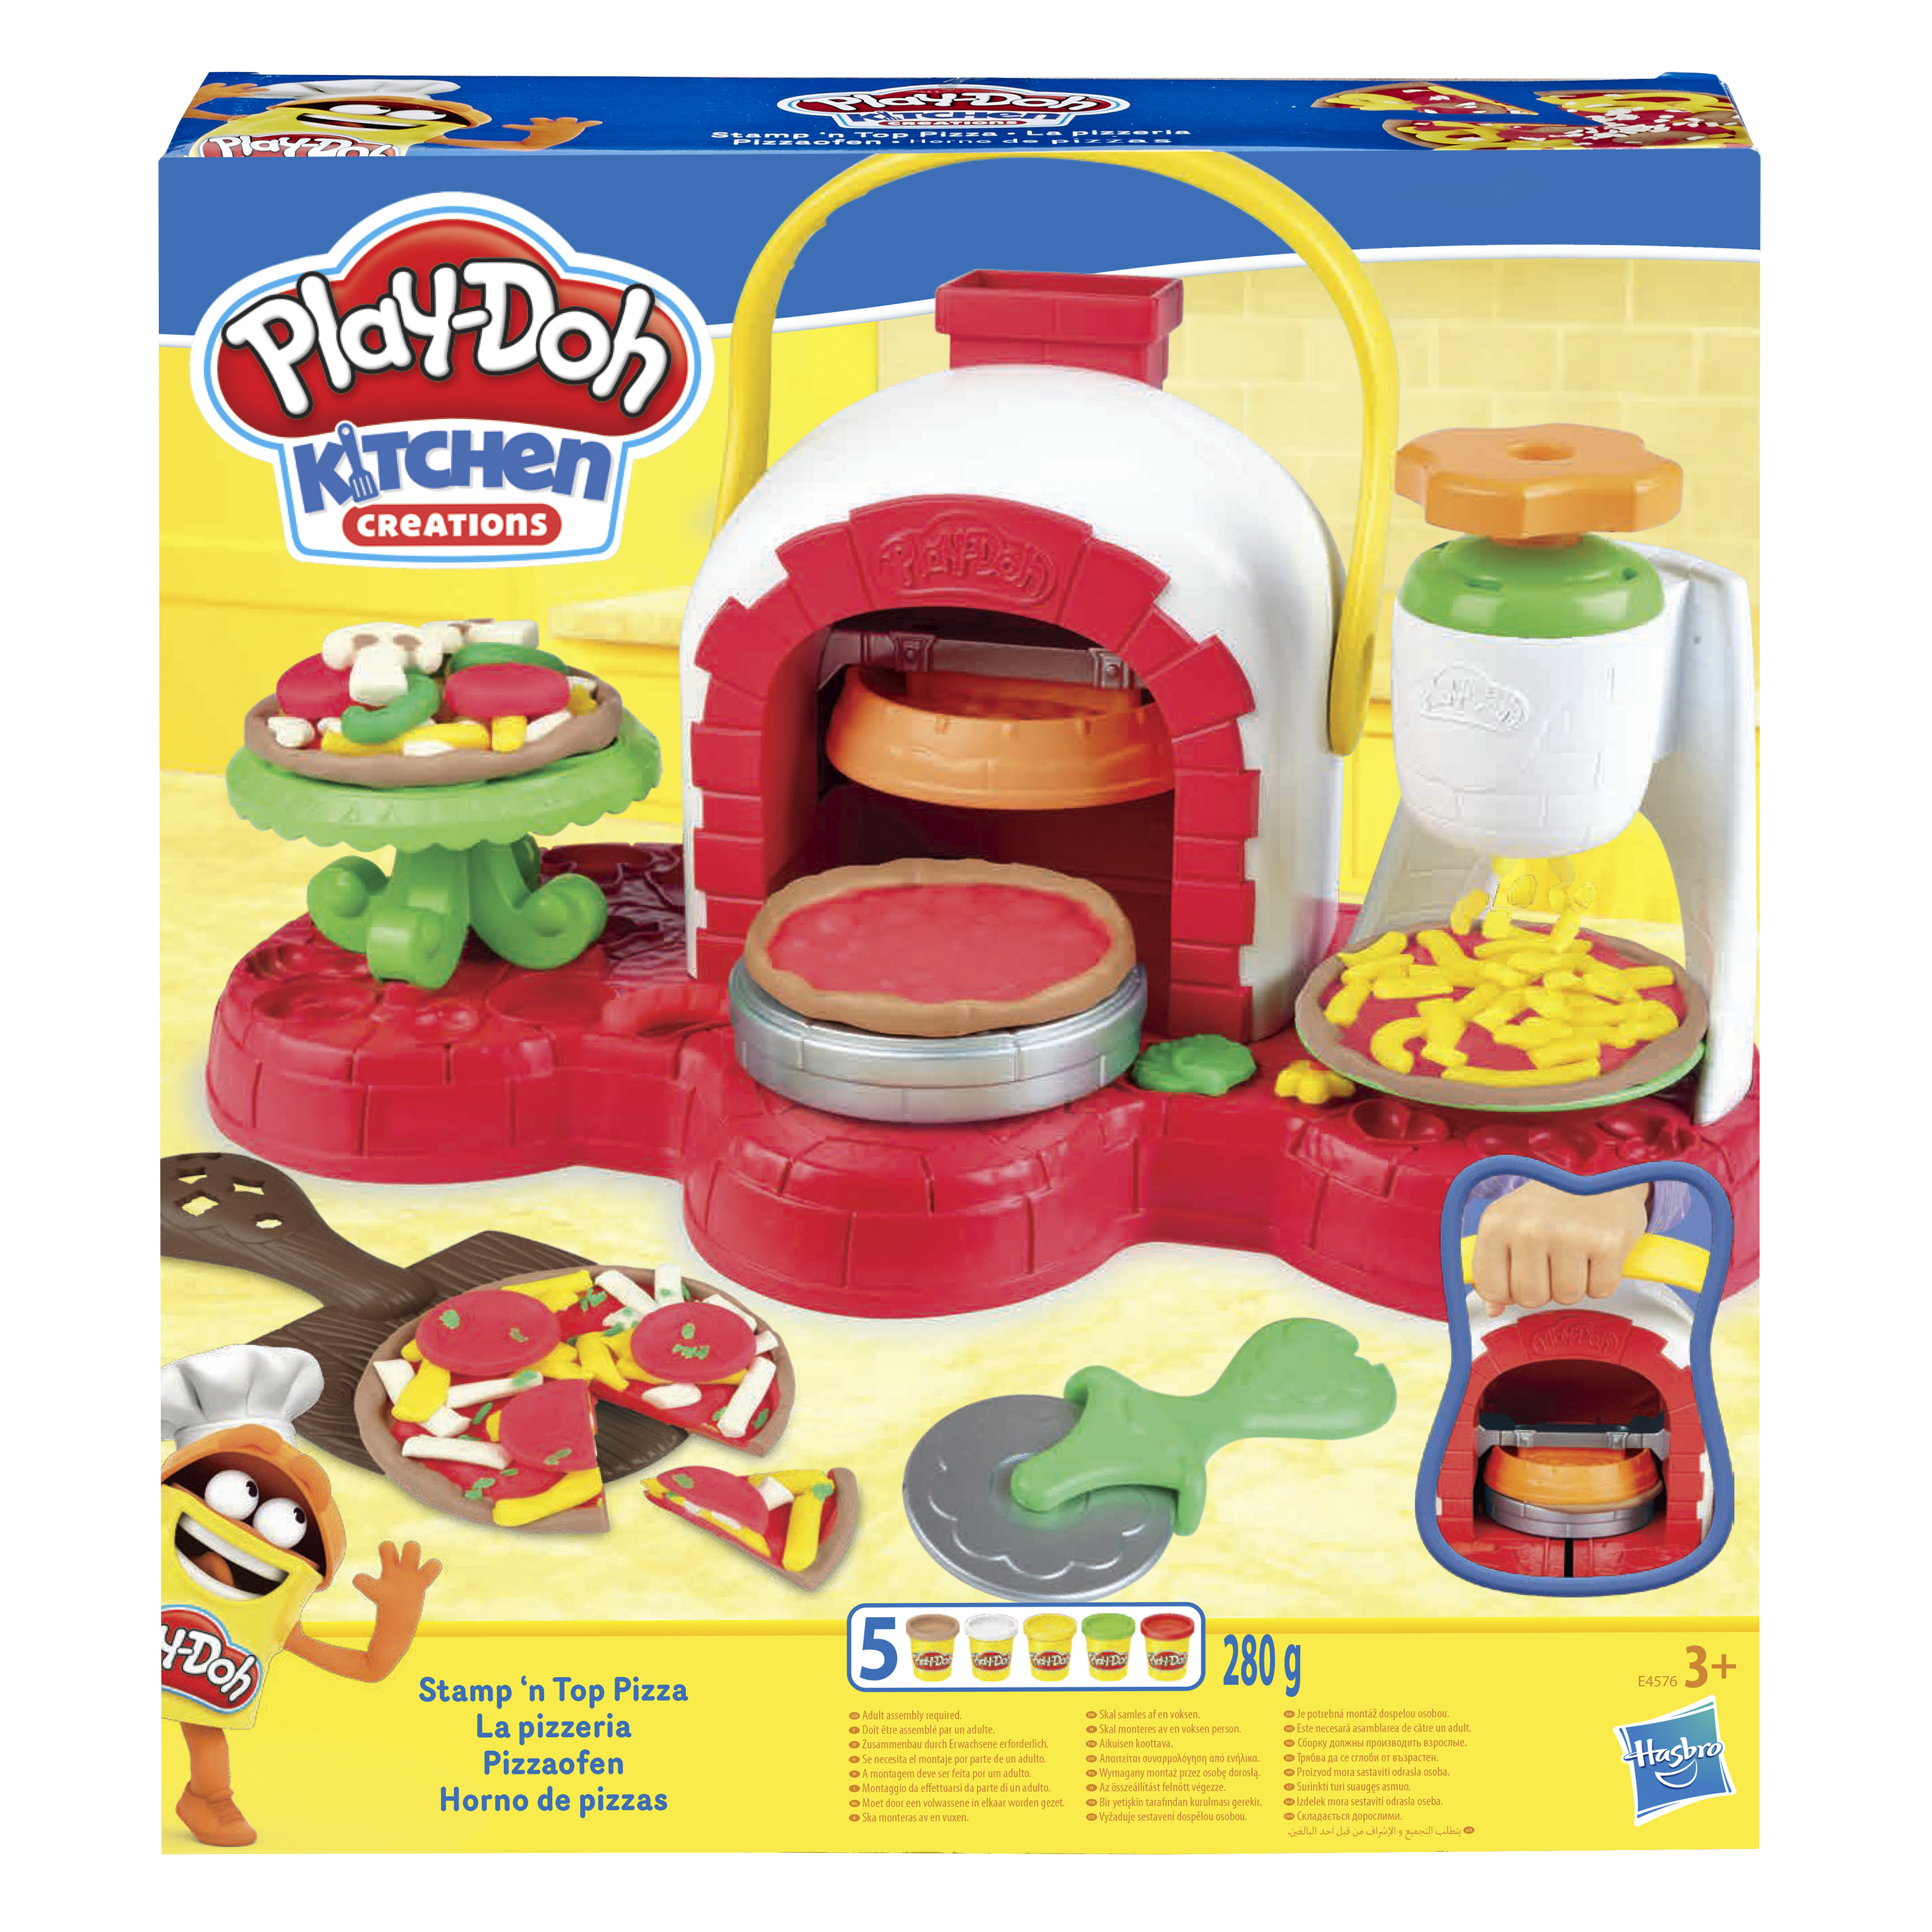 Hasbro - Play-Doh - Pâte à modeler - Le cabinet vétérinaire